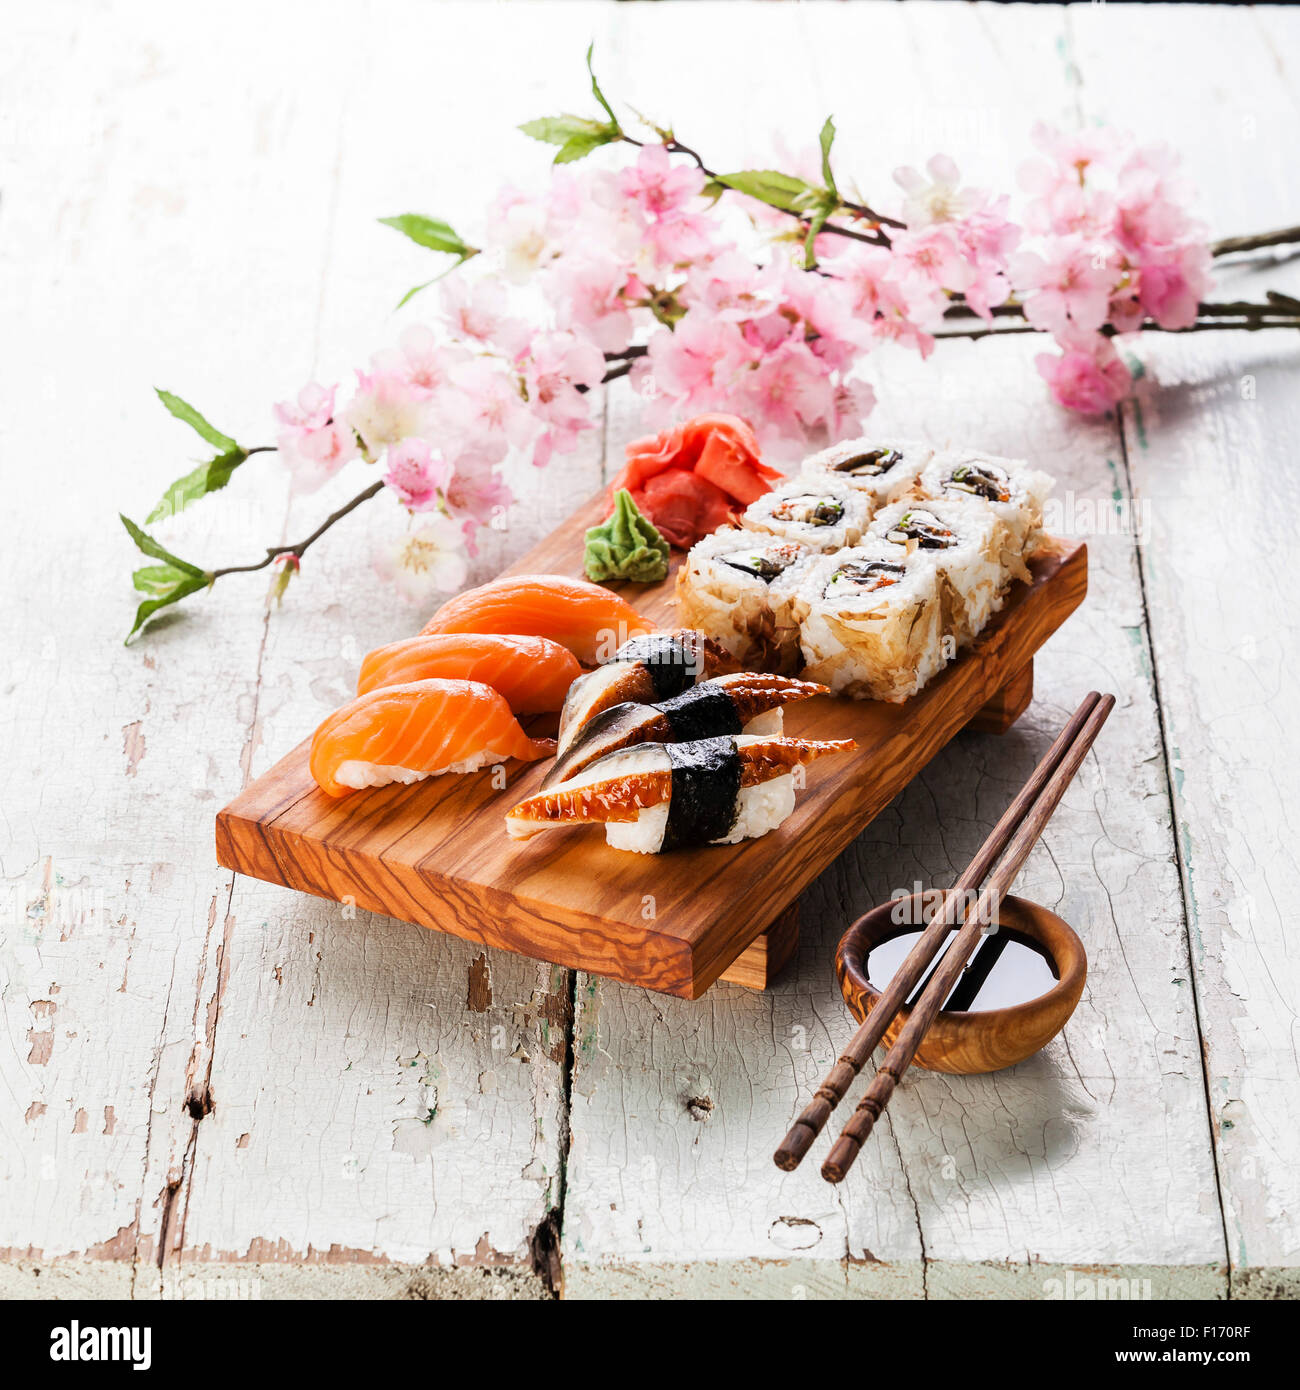 Sushi Set with sashimi and sushi rolls on olive wood board on blue wooden background Stock Photo